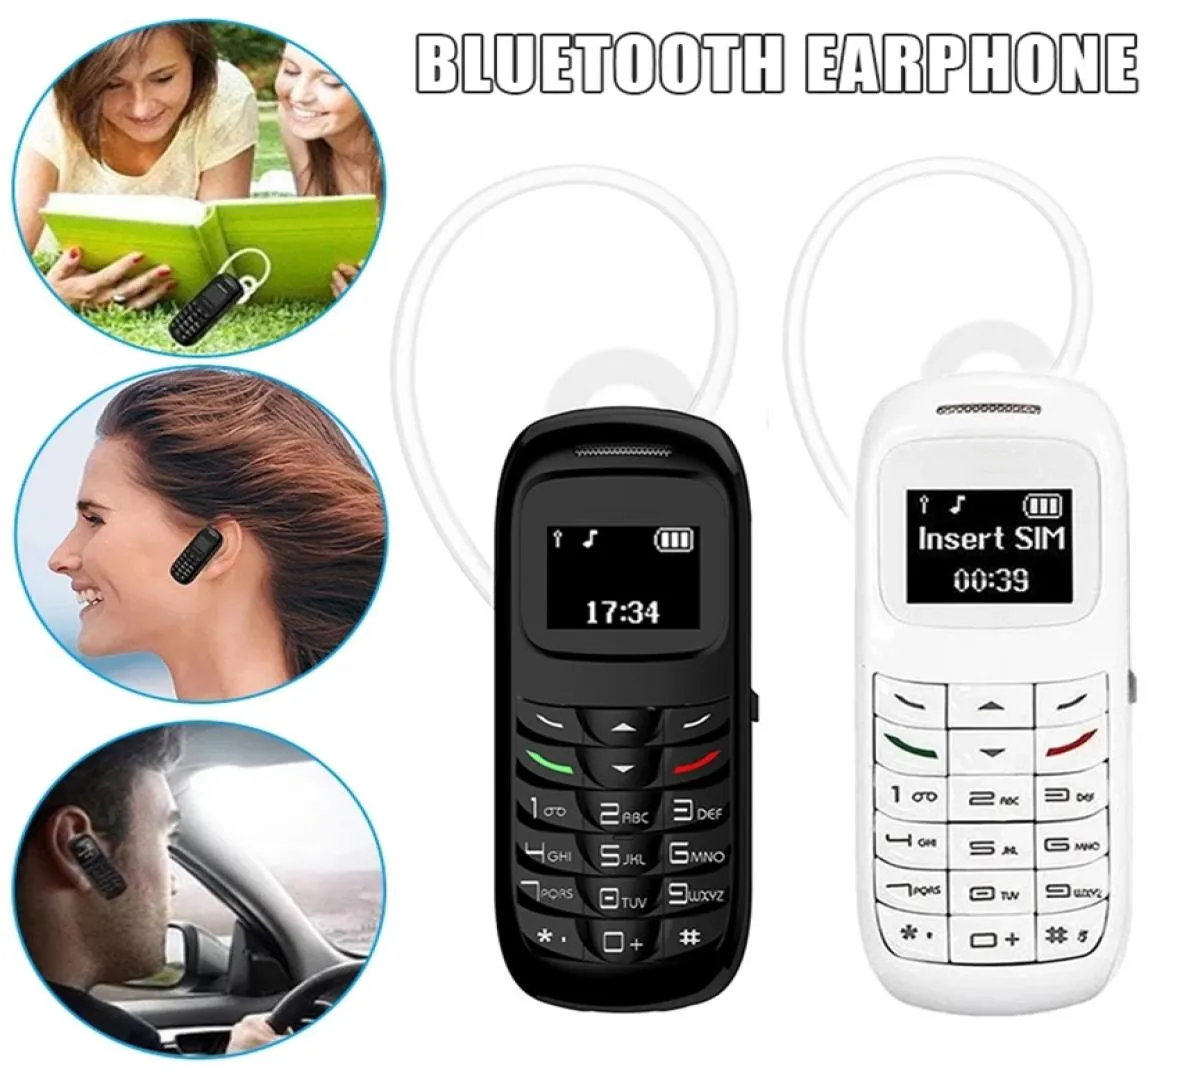 Desbloqueado super mini moda telefones celulares bluetooth único cartão sim gsm voz mágica bluetooth fone de ouvido fone de ouvido bt dialer móvel phon7370636